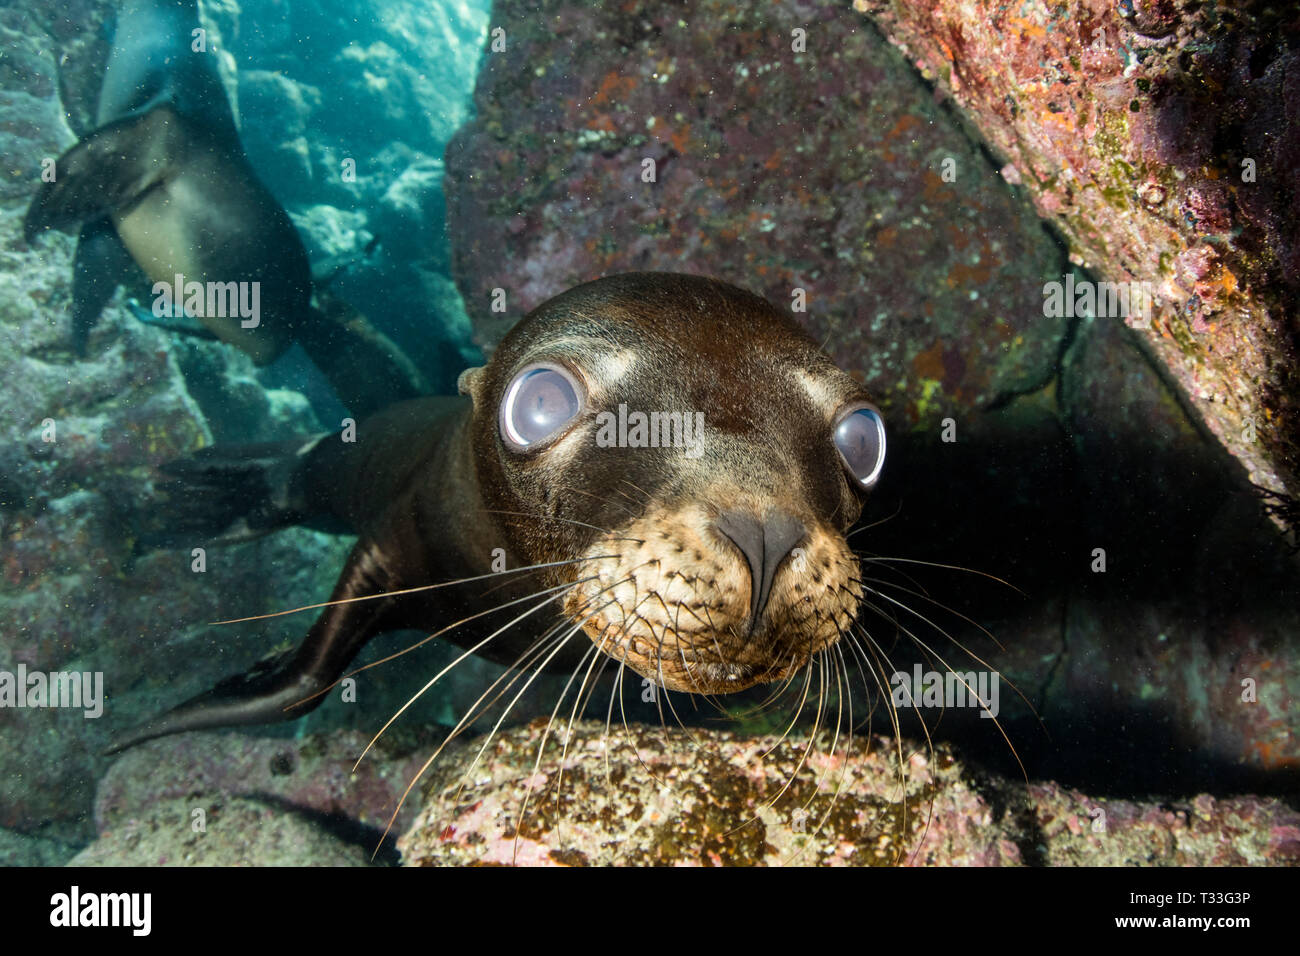 Il leone marino della California, Zalophus californianus, La Paz, Baja California Sur, Messico Foto Stock